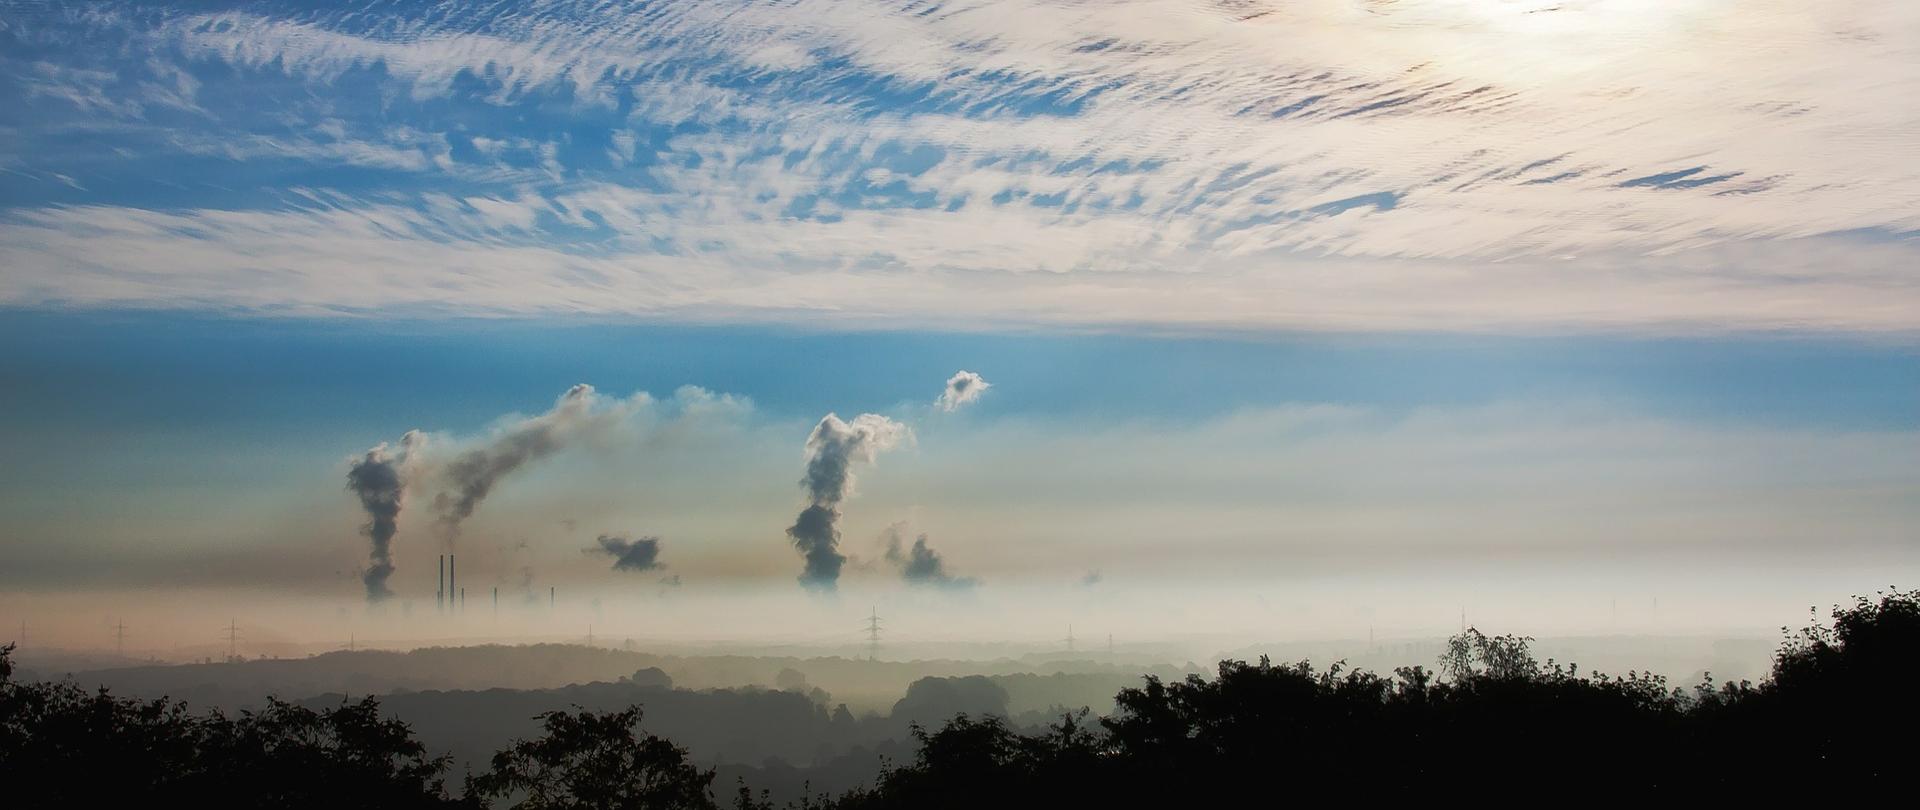 Widok na horyzont zasnuty dymem. Na pierwszym planie czubki drzew, w oddali kominy fabryk wystające spod warstwy smogu. Na niebie cienka warstwa chmur utrudniająca przedostanie się promieni słonecznych.